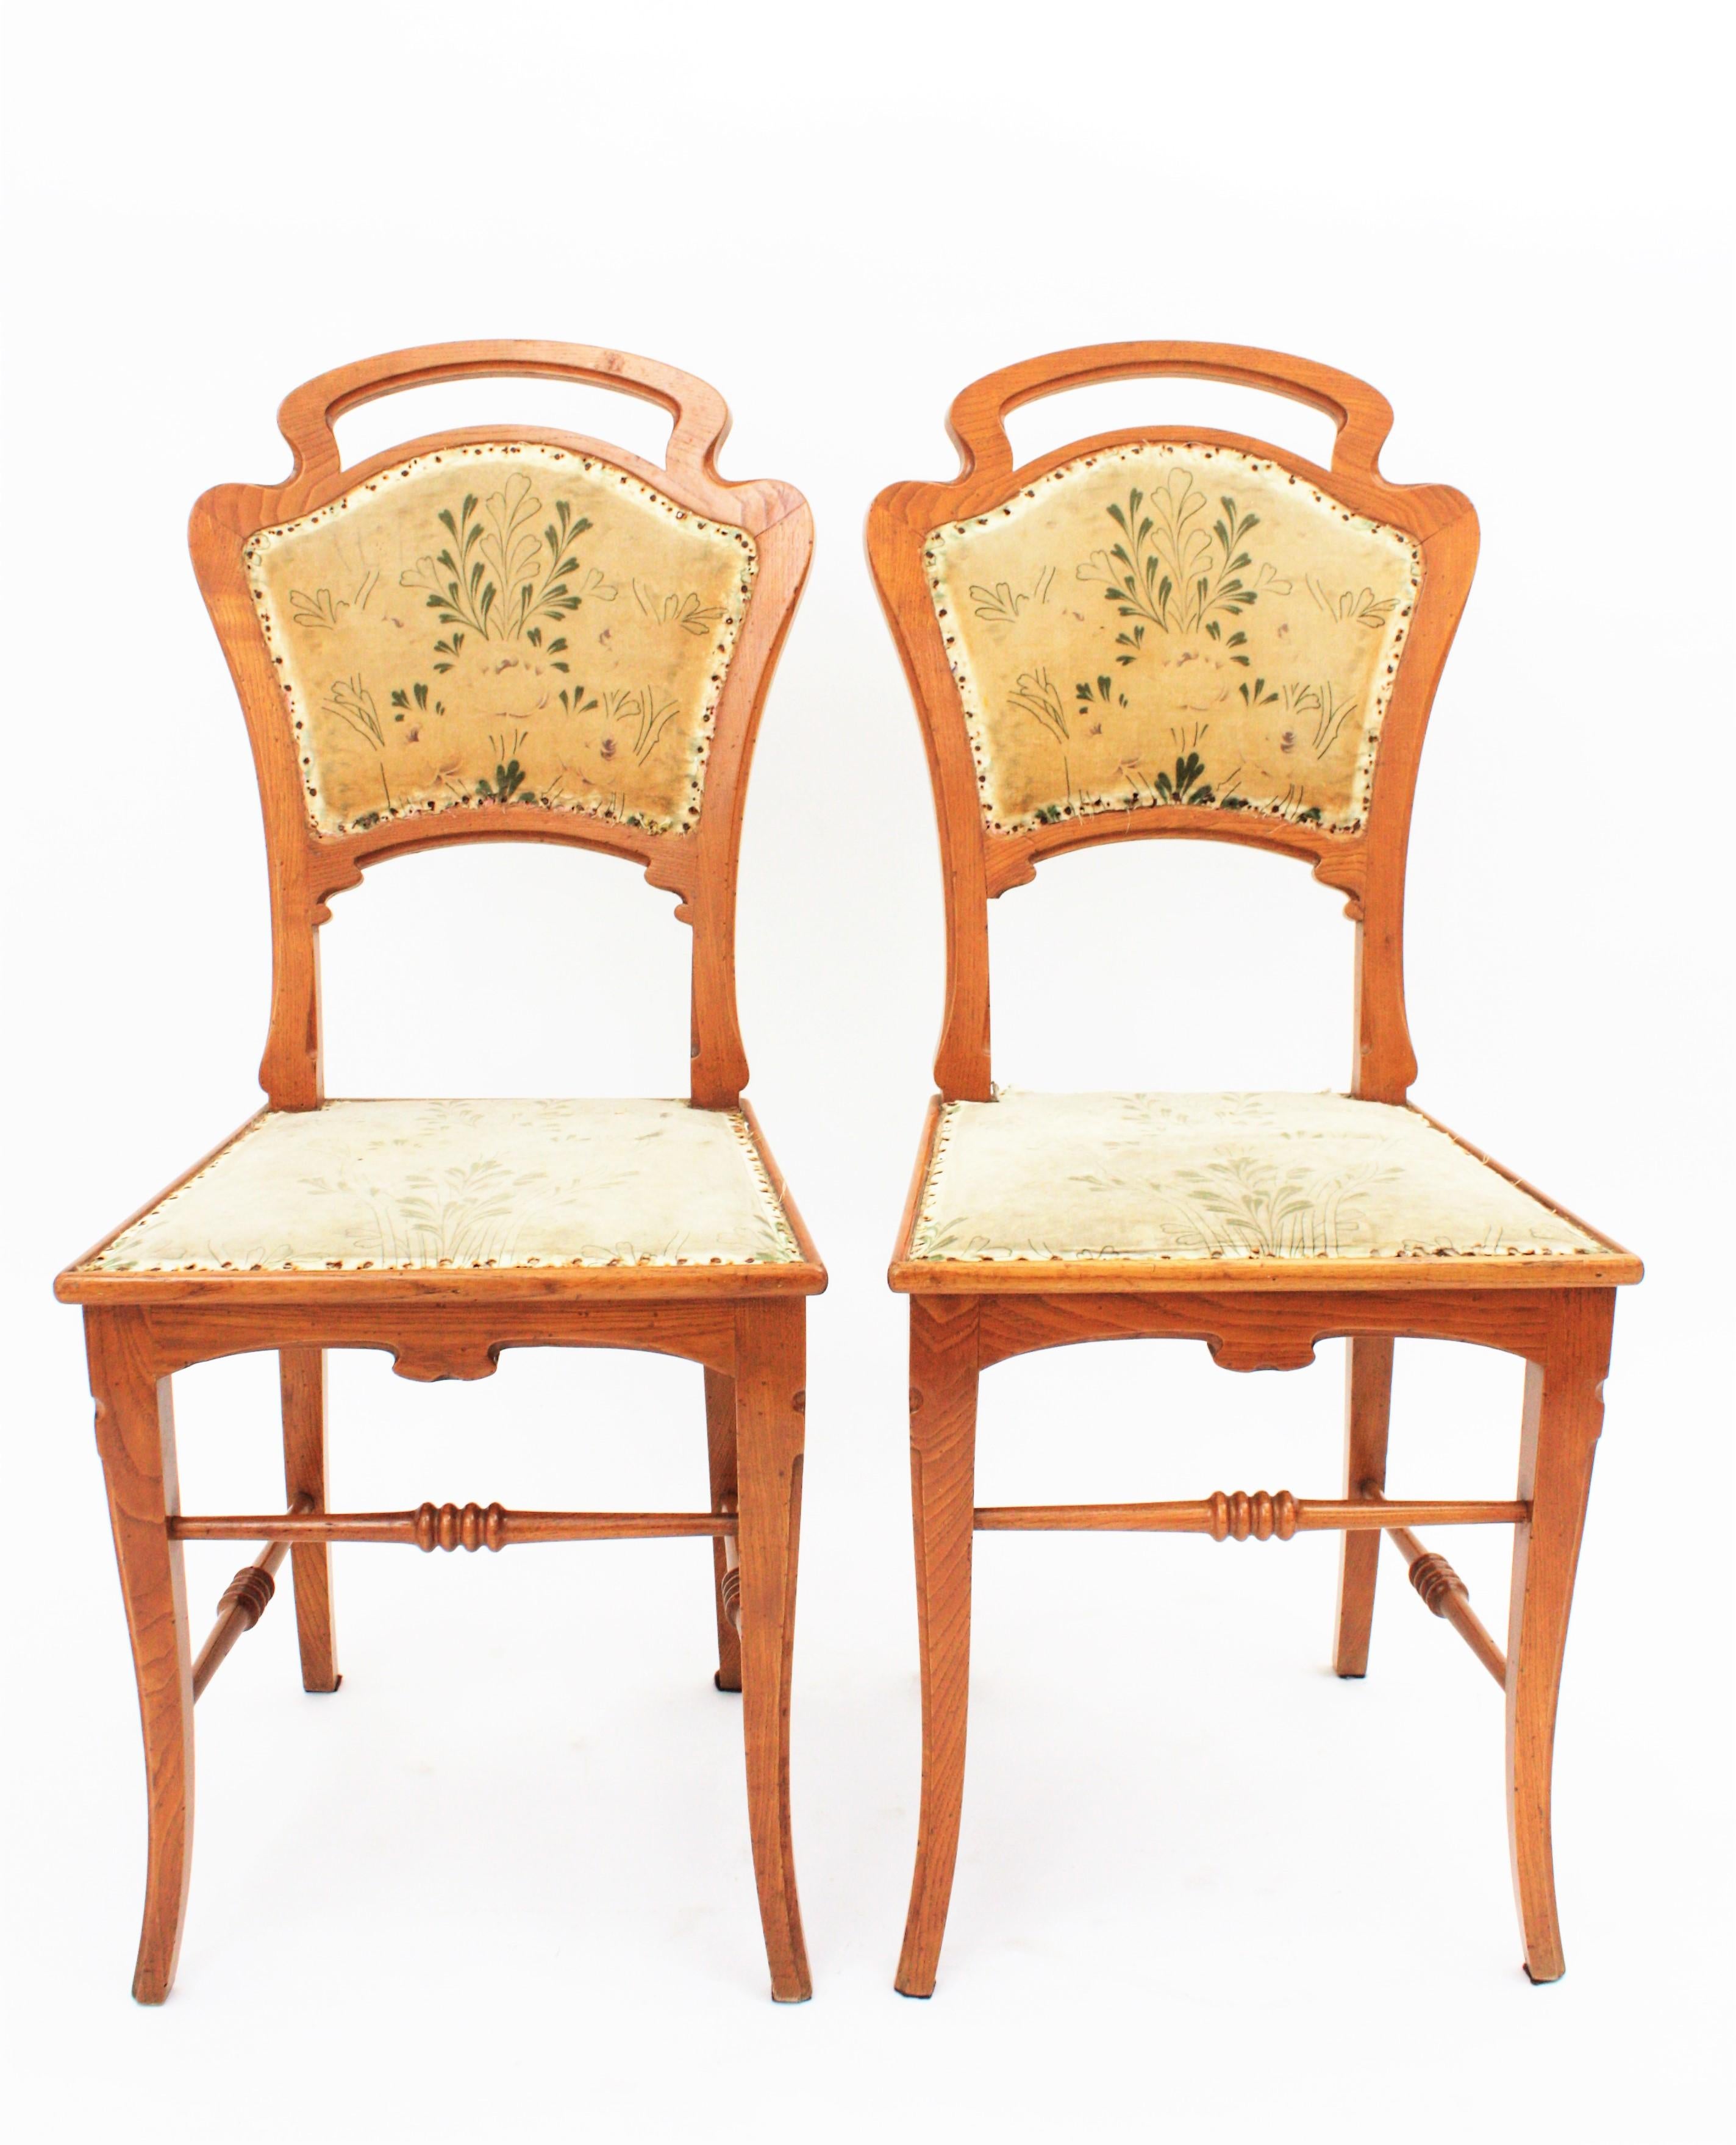 Ein Paar Jugendstilstühle aus geschnitztem Eschenholz, gepolstert mit dem originalen floralen Samtstoff. Diese stilvollen handgeschnitzten Stühle wurden in Spanien im Stil des Meisters Antoni Gaudí hergestellt.
Barcelona, 1910-1920er Jahre.